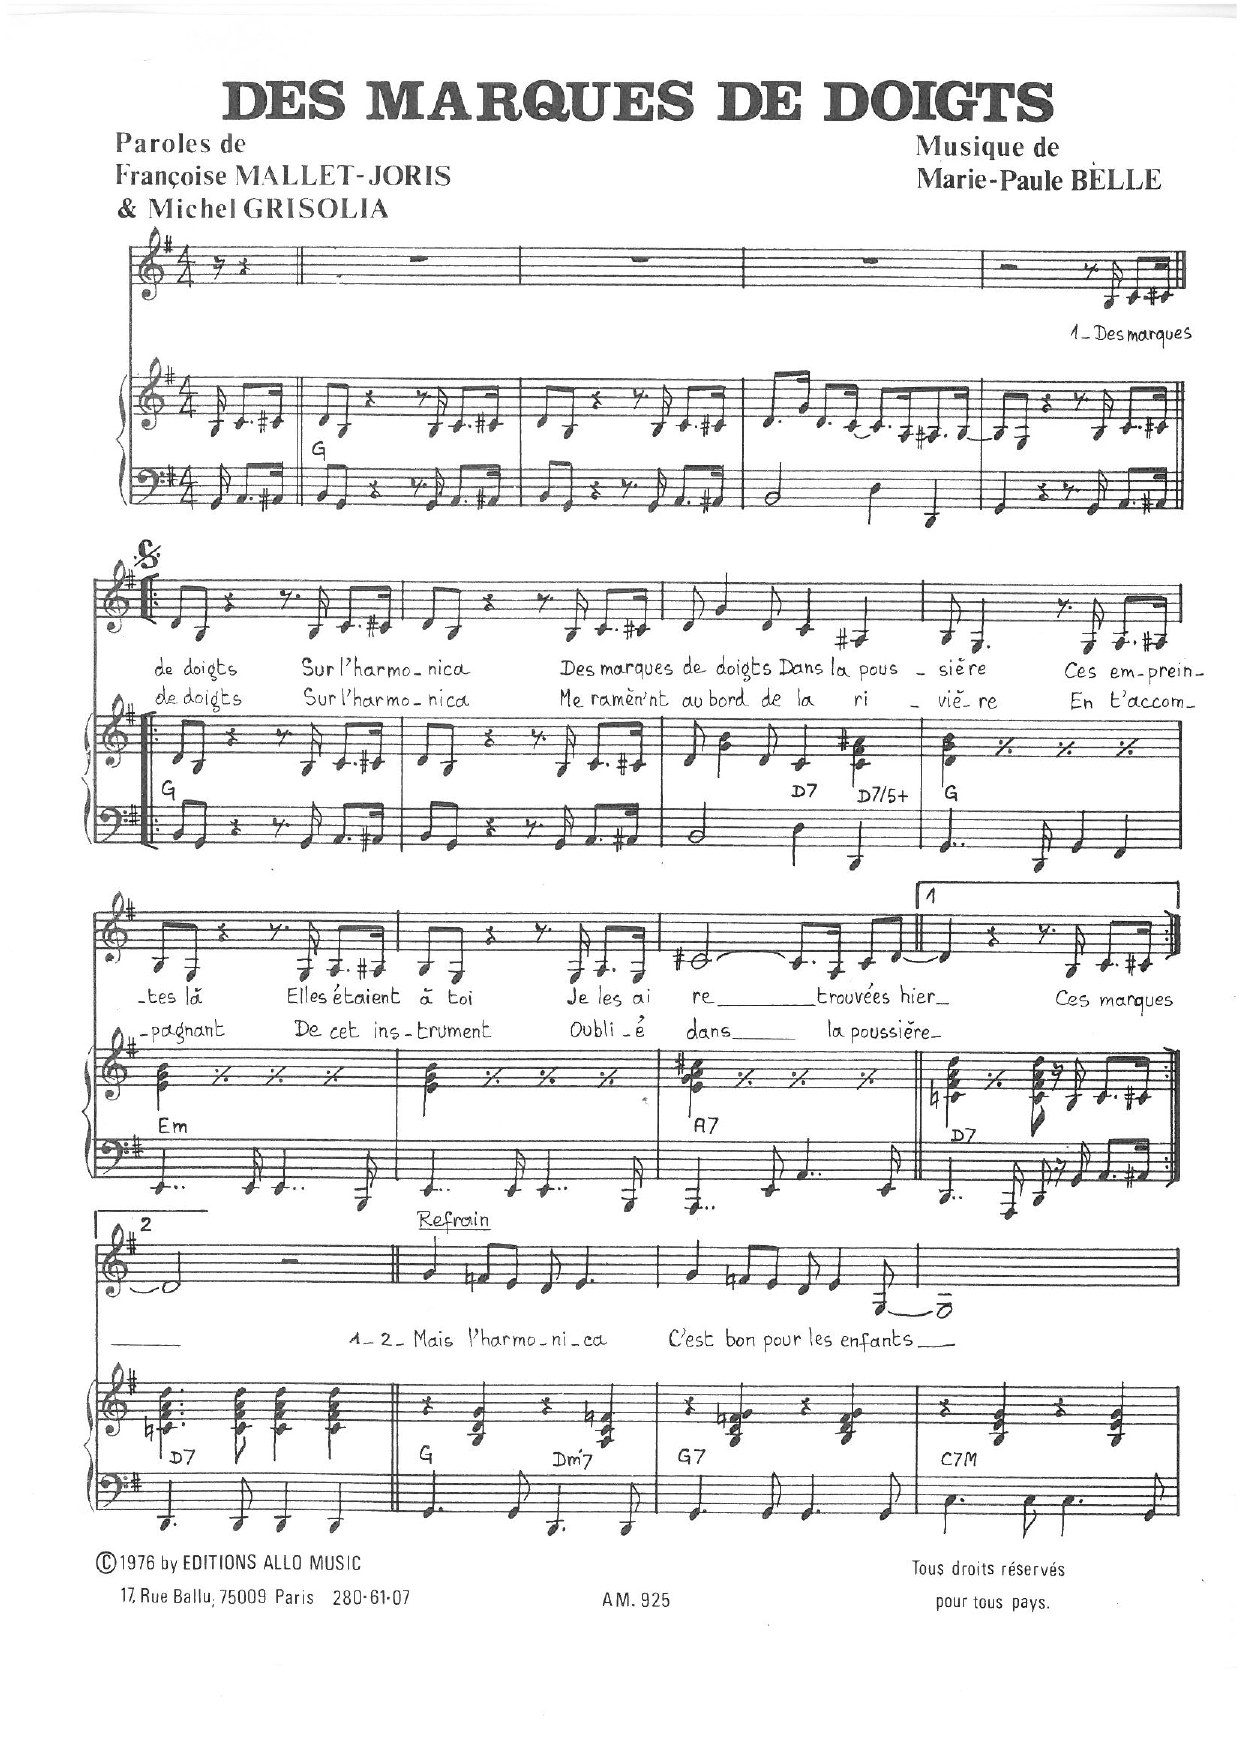 Michel Grisolia, Françoise Mallet-Joris and Marie Paule Belle Des Marques de Doigts Sheet Music Notes & Chords for Piano & Vocal - Download or Print PDF